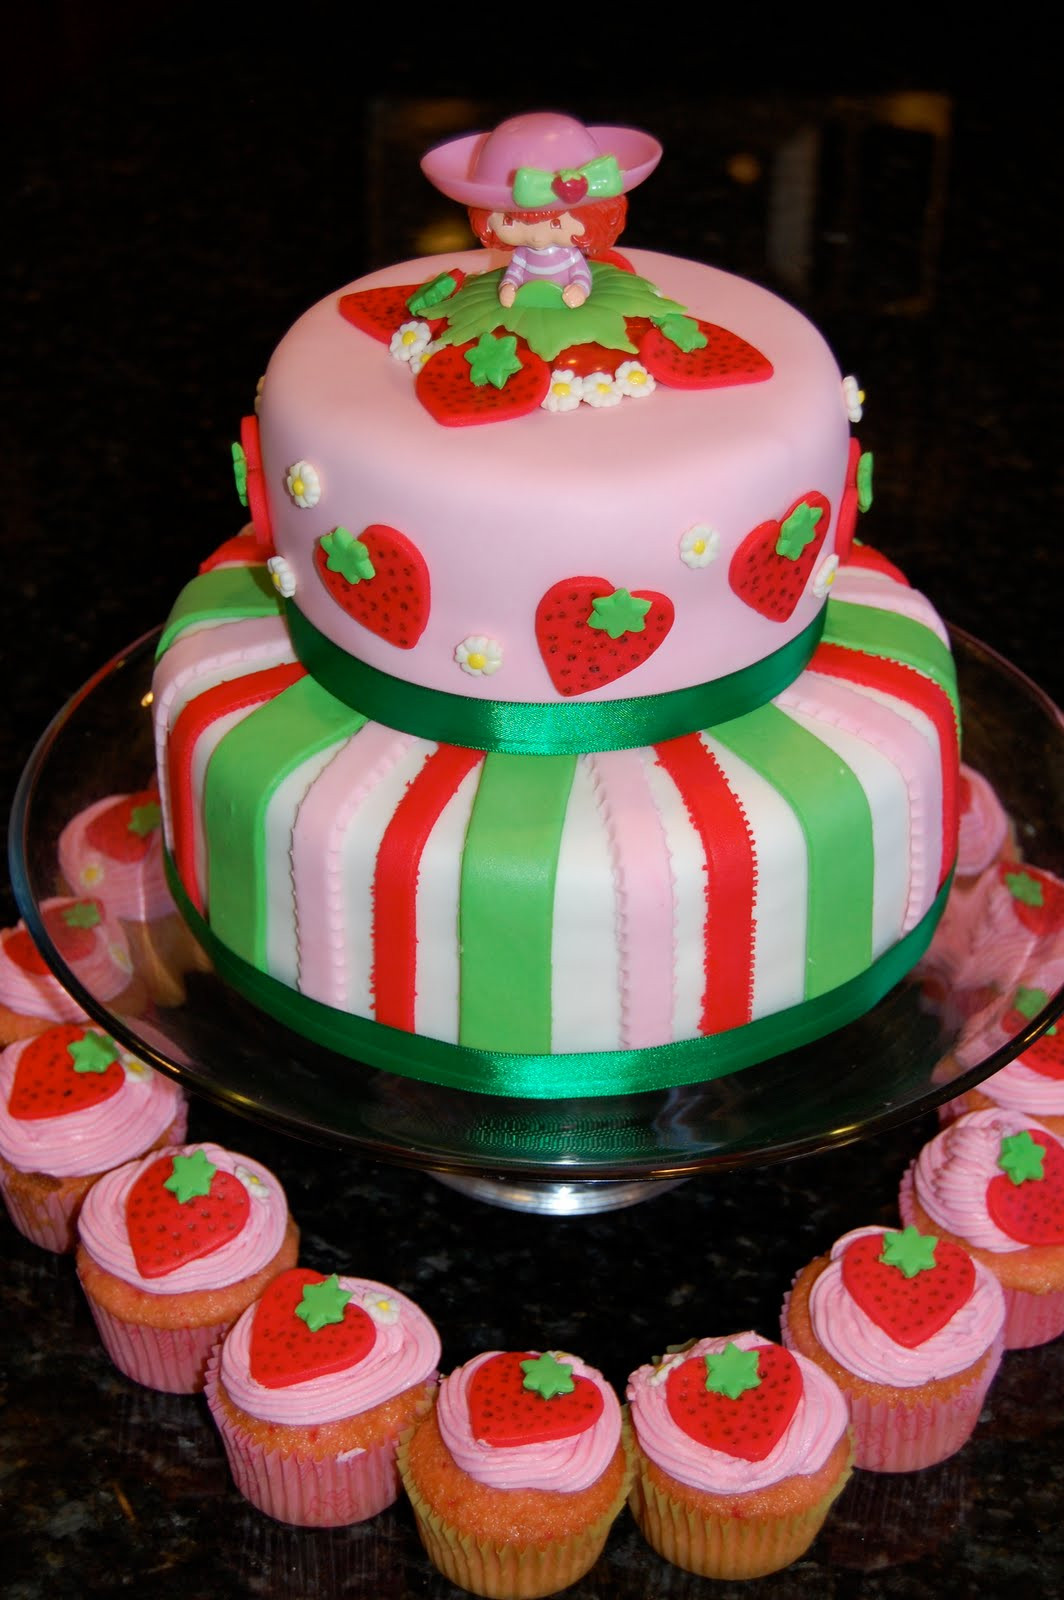 Strawberry Shortcake Birthday Cake
 MKHKKH Strawberry Shortcake Cake